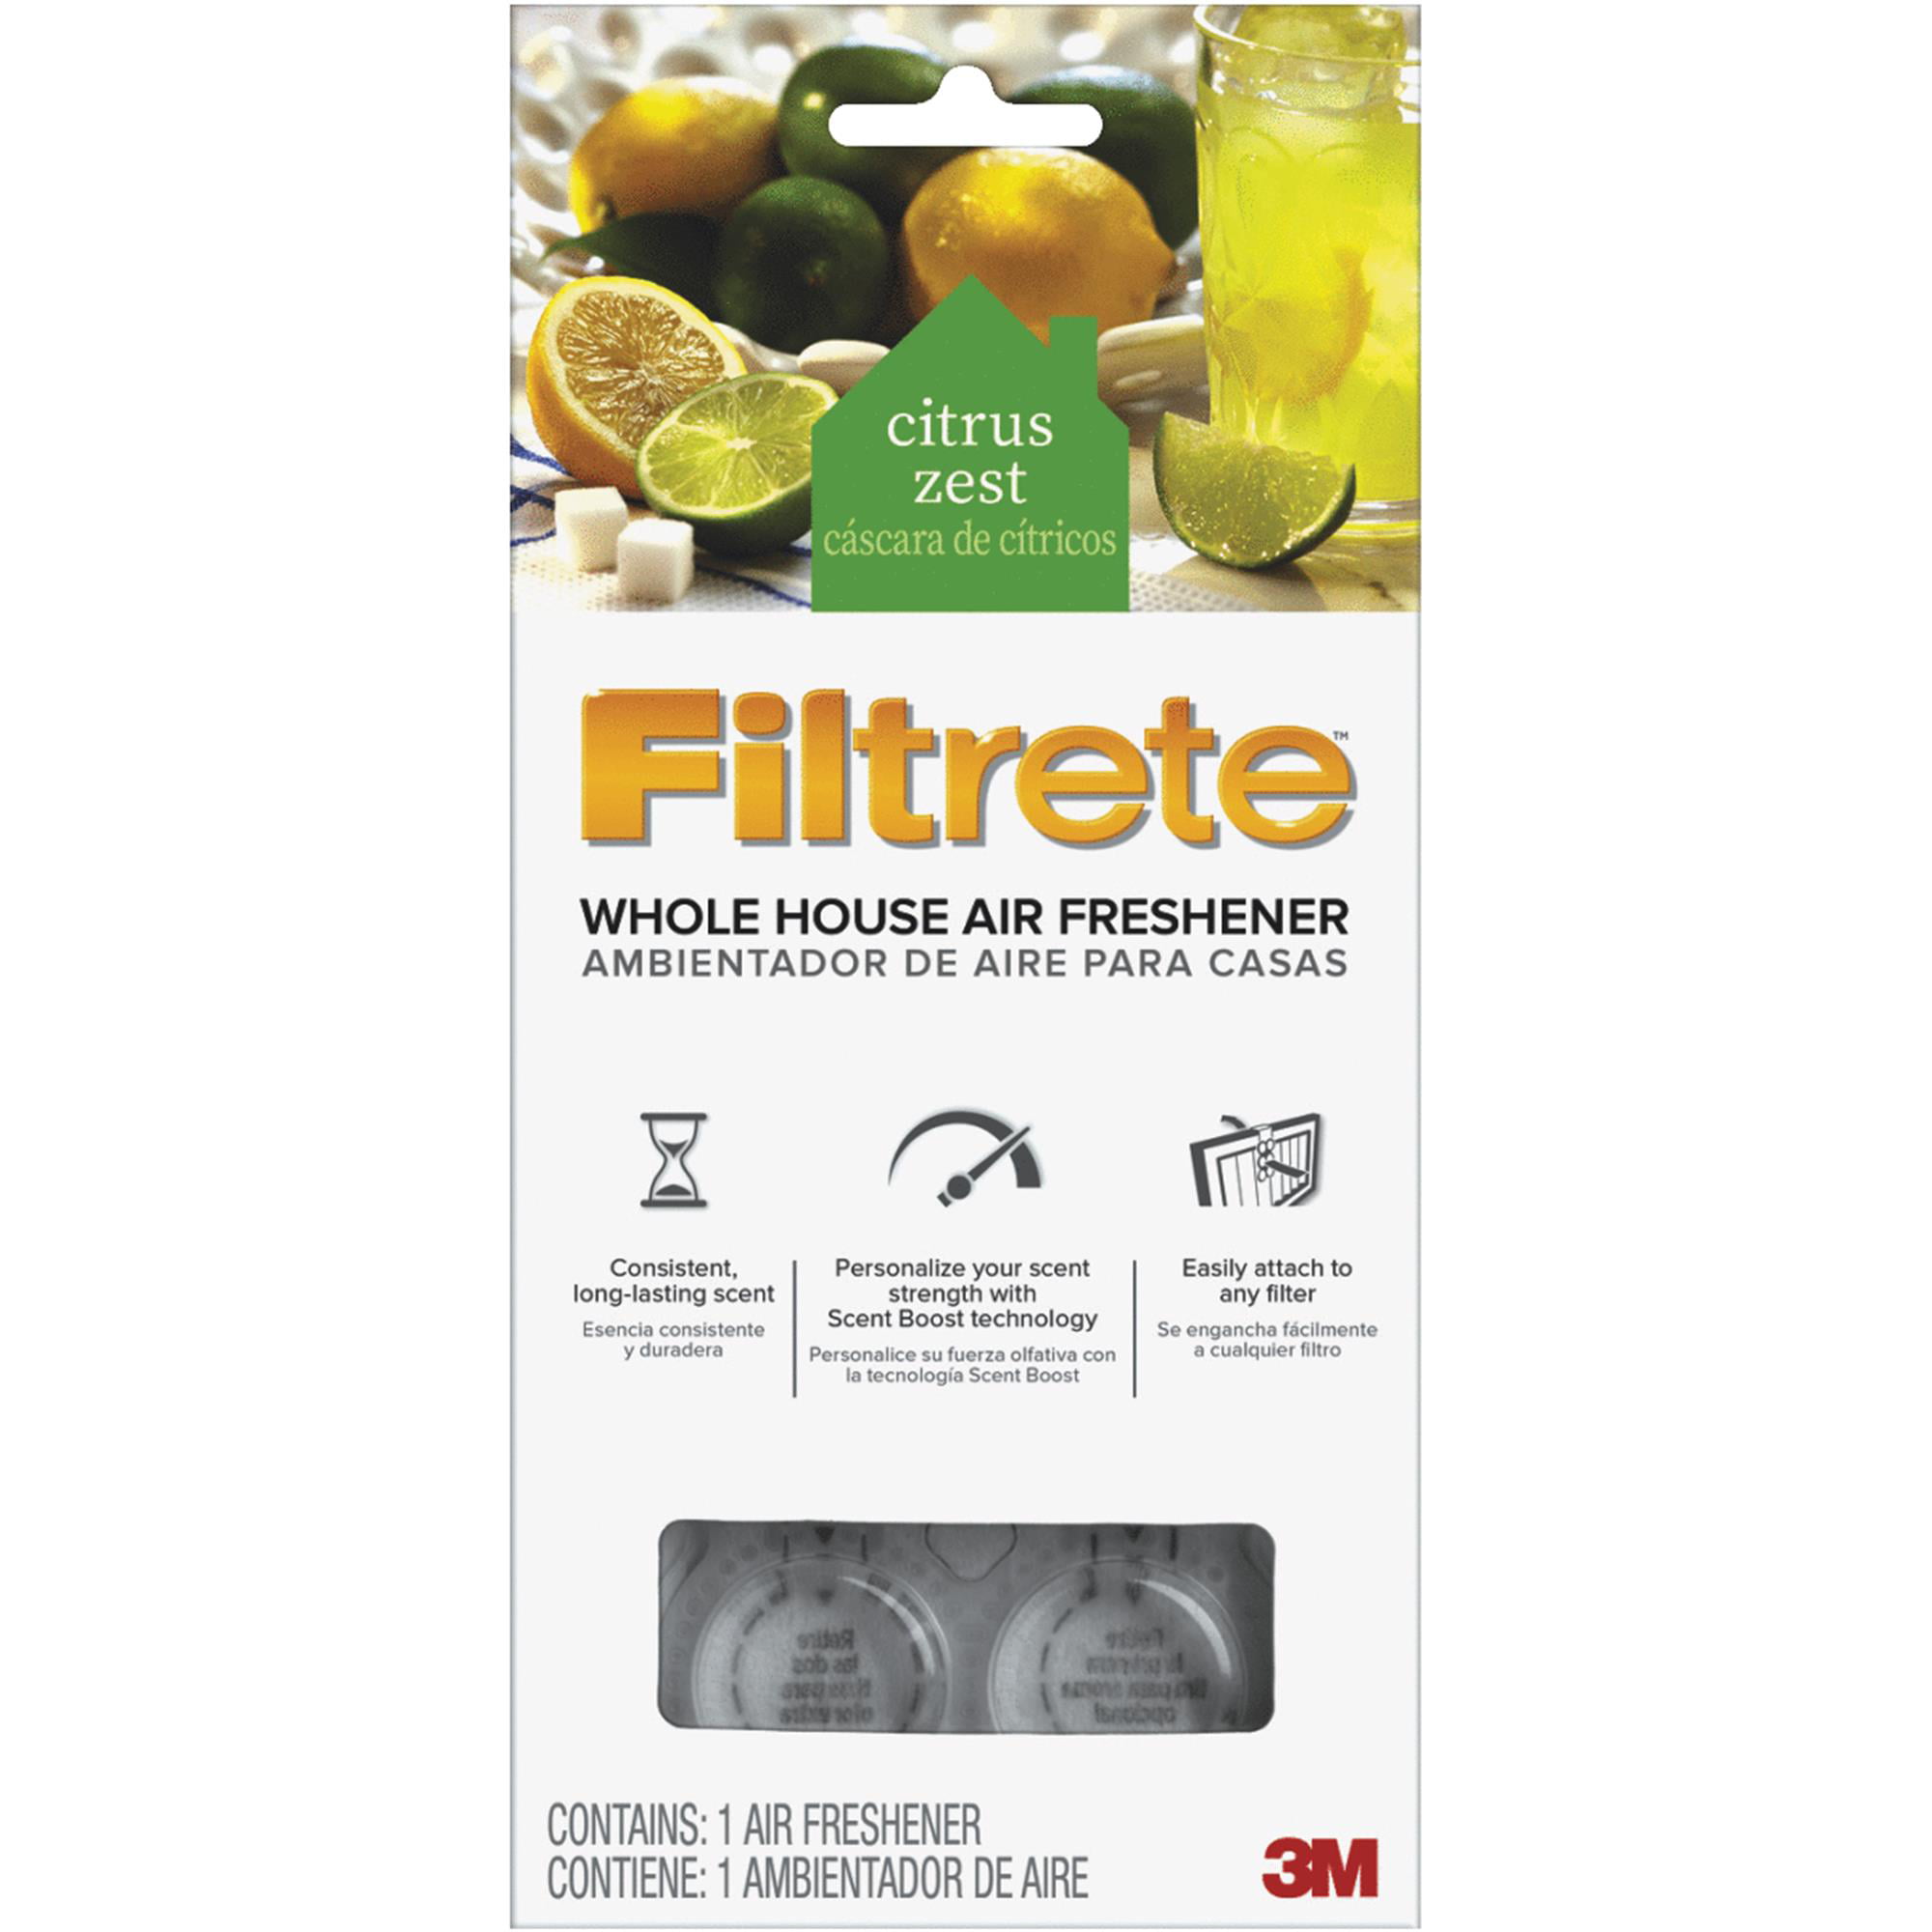 Filtrete Furnace Air Freshener - Walmart.com - Walmart.com